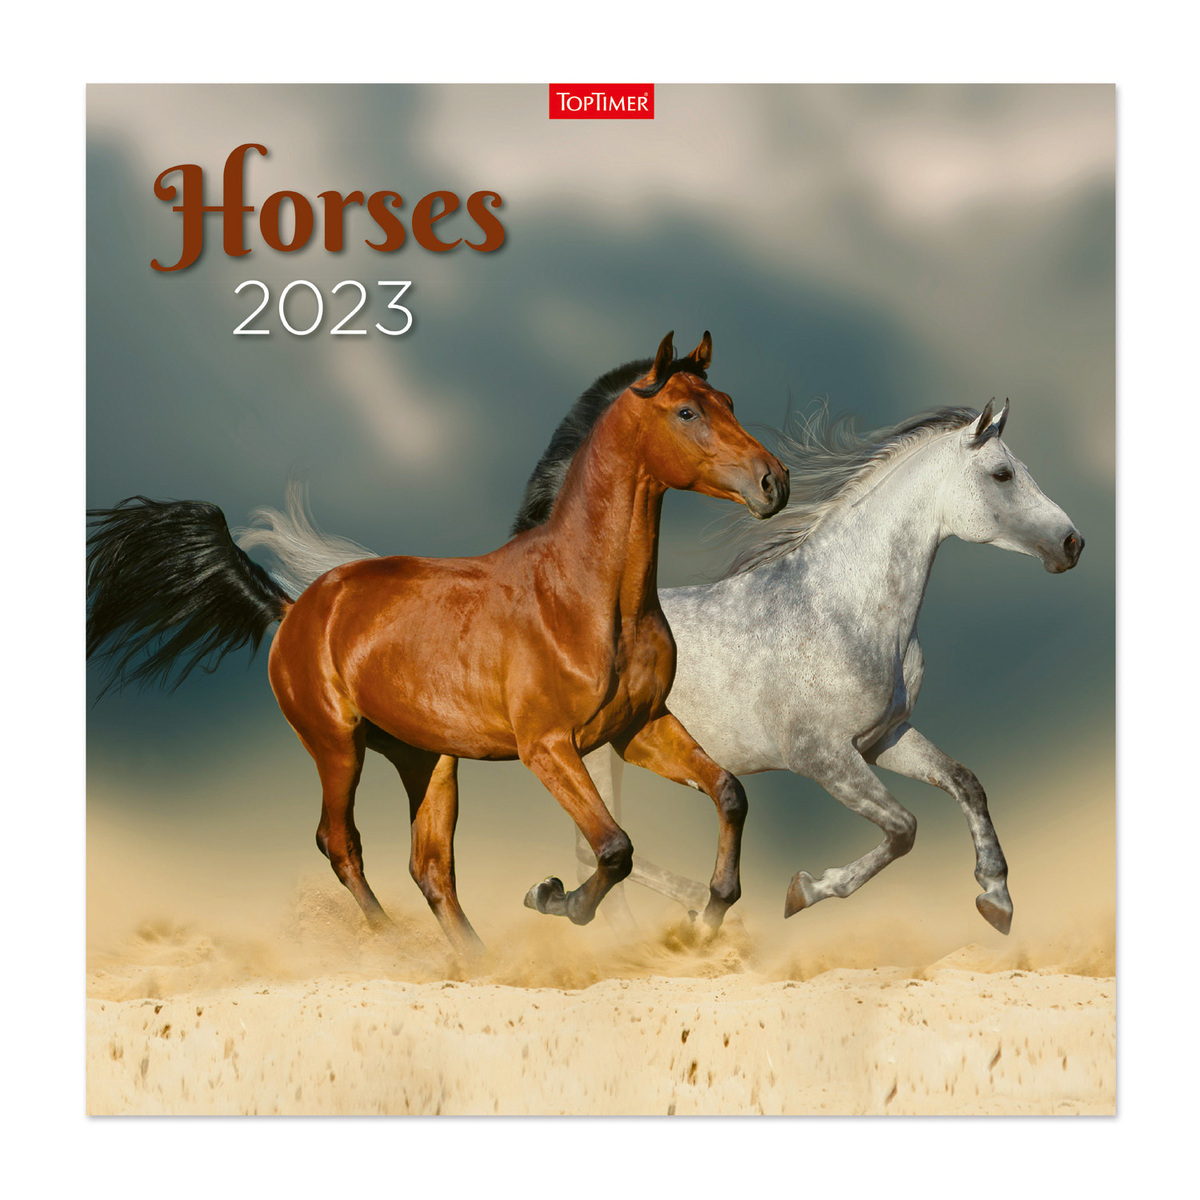 Horses, képes lemeznaptár 2023